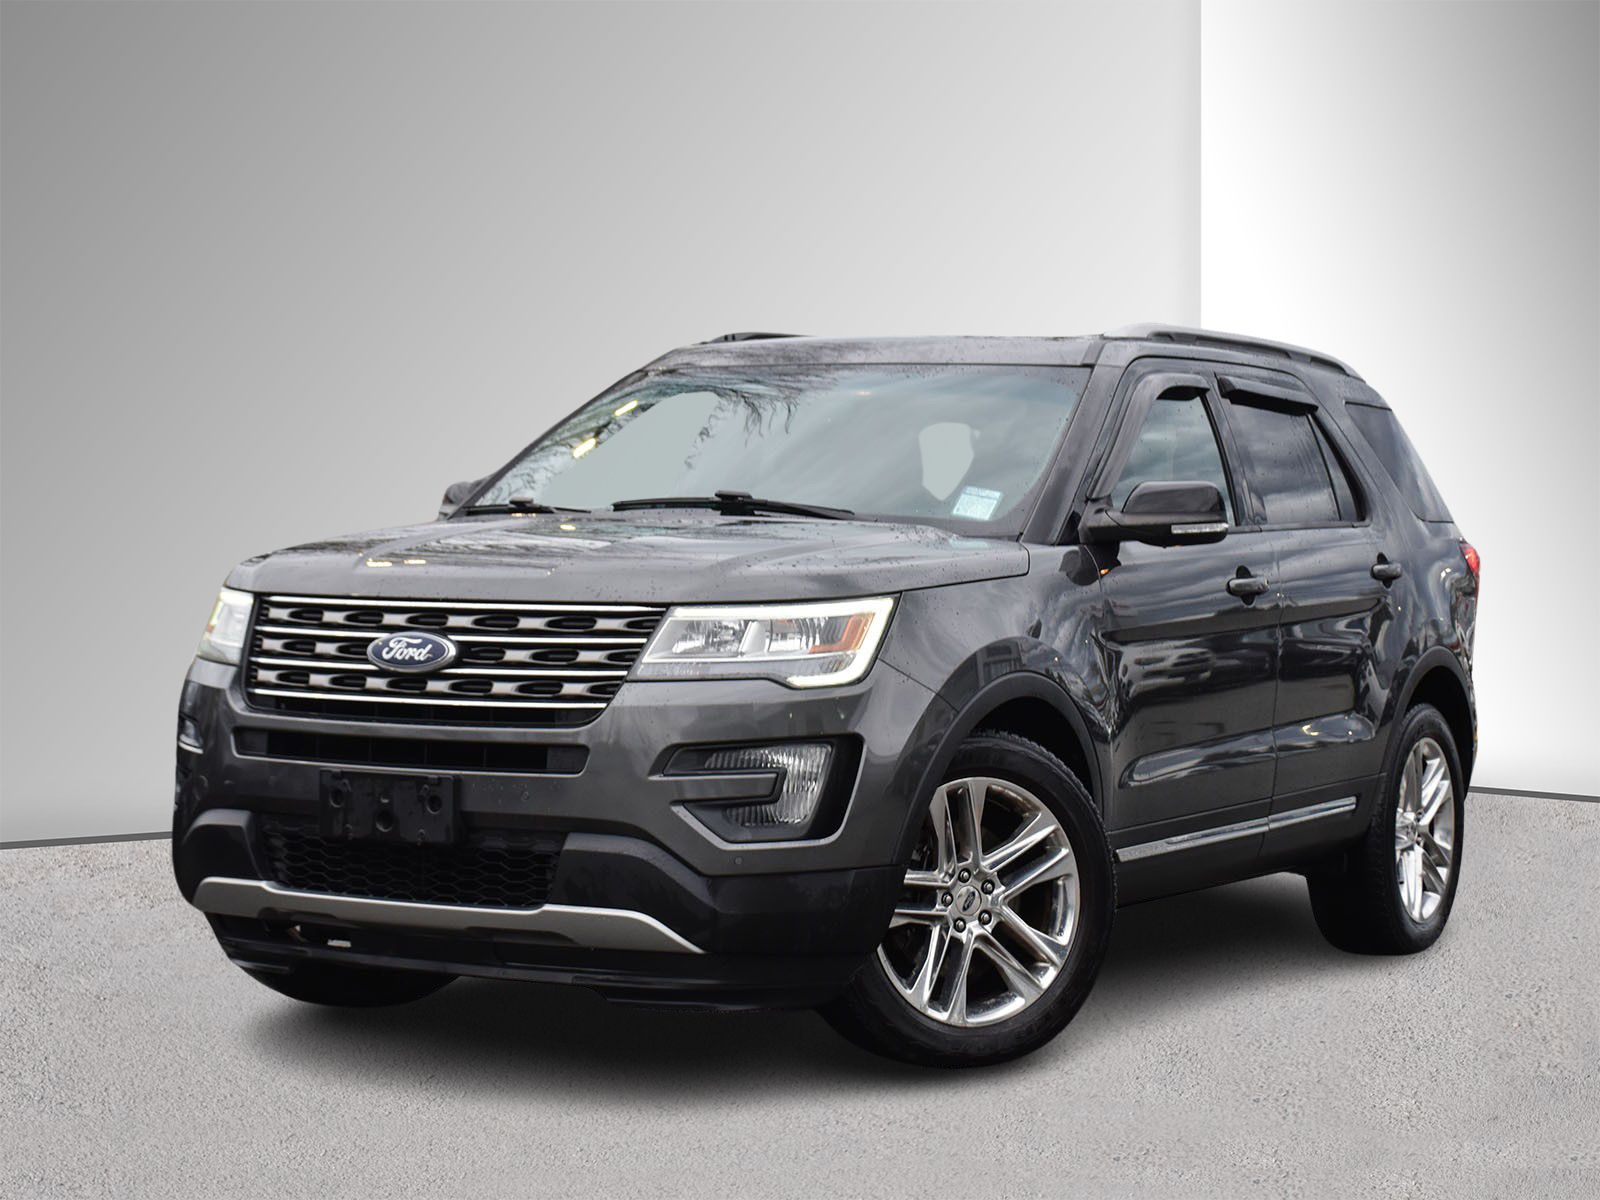 2016 Ford Explorer XLT - Leather, Backup Cam, Sunroof, Parking Sensor